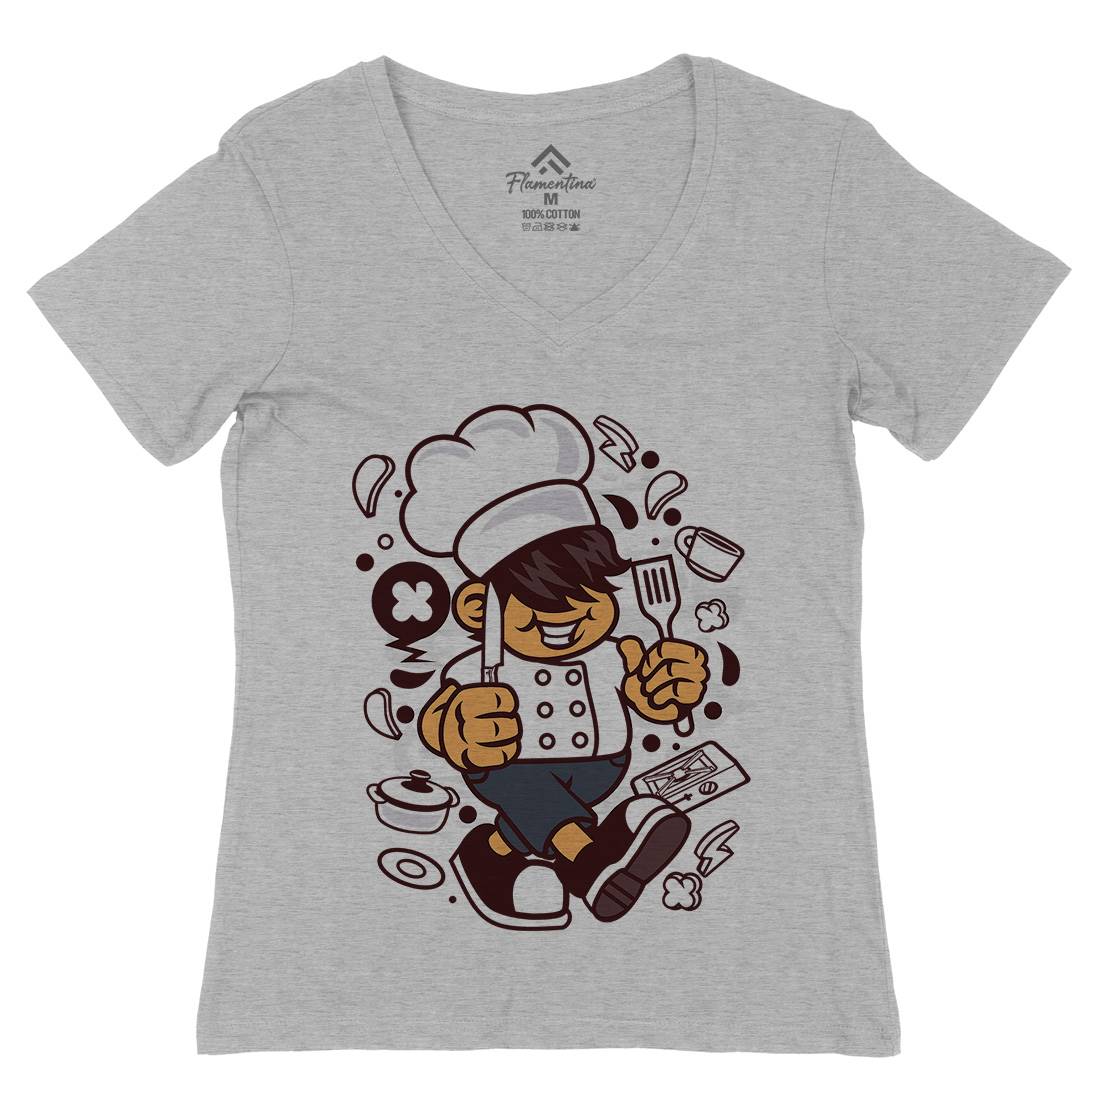 Chef Kid Womens Organic V-Neck T-Shirt Work C057